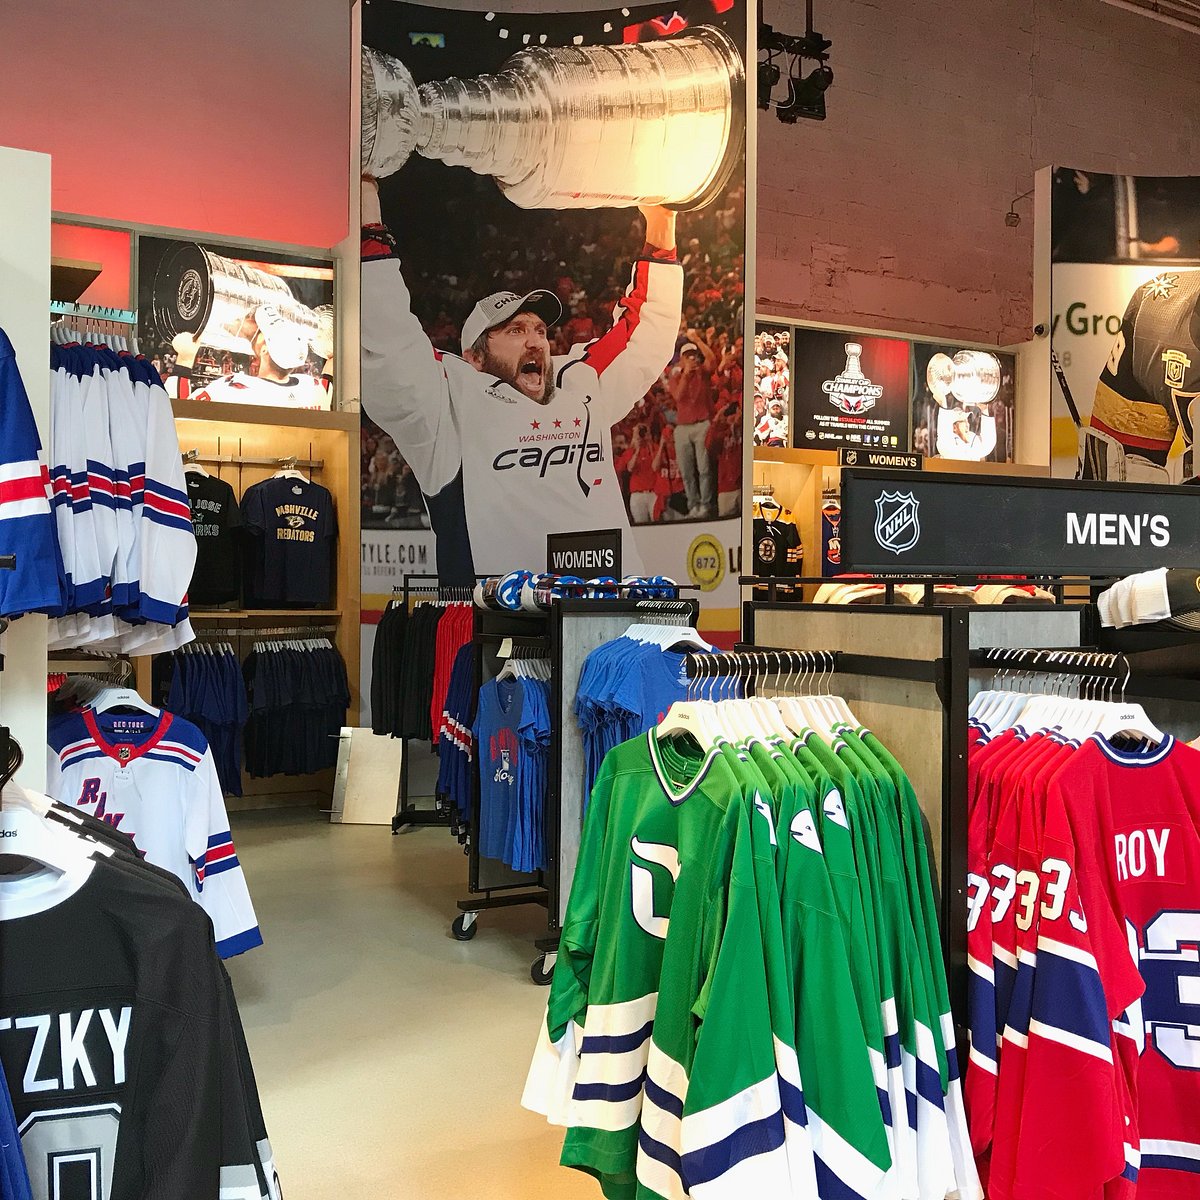 NHL Apparel, NHL Fan Gear & Hockey Gifts, NHL Shop, NHL Hockey Jerseys, NHL  Gear, NHL Hockey Apparel, NHL Hockey Merchandise